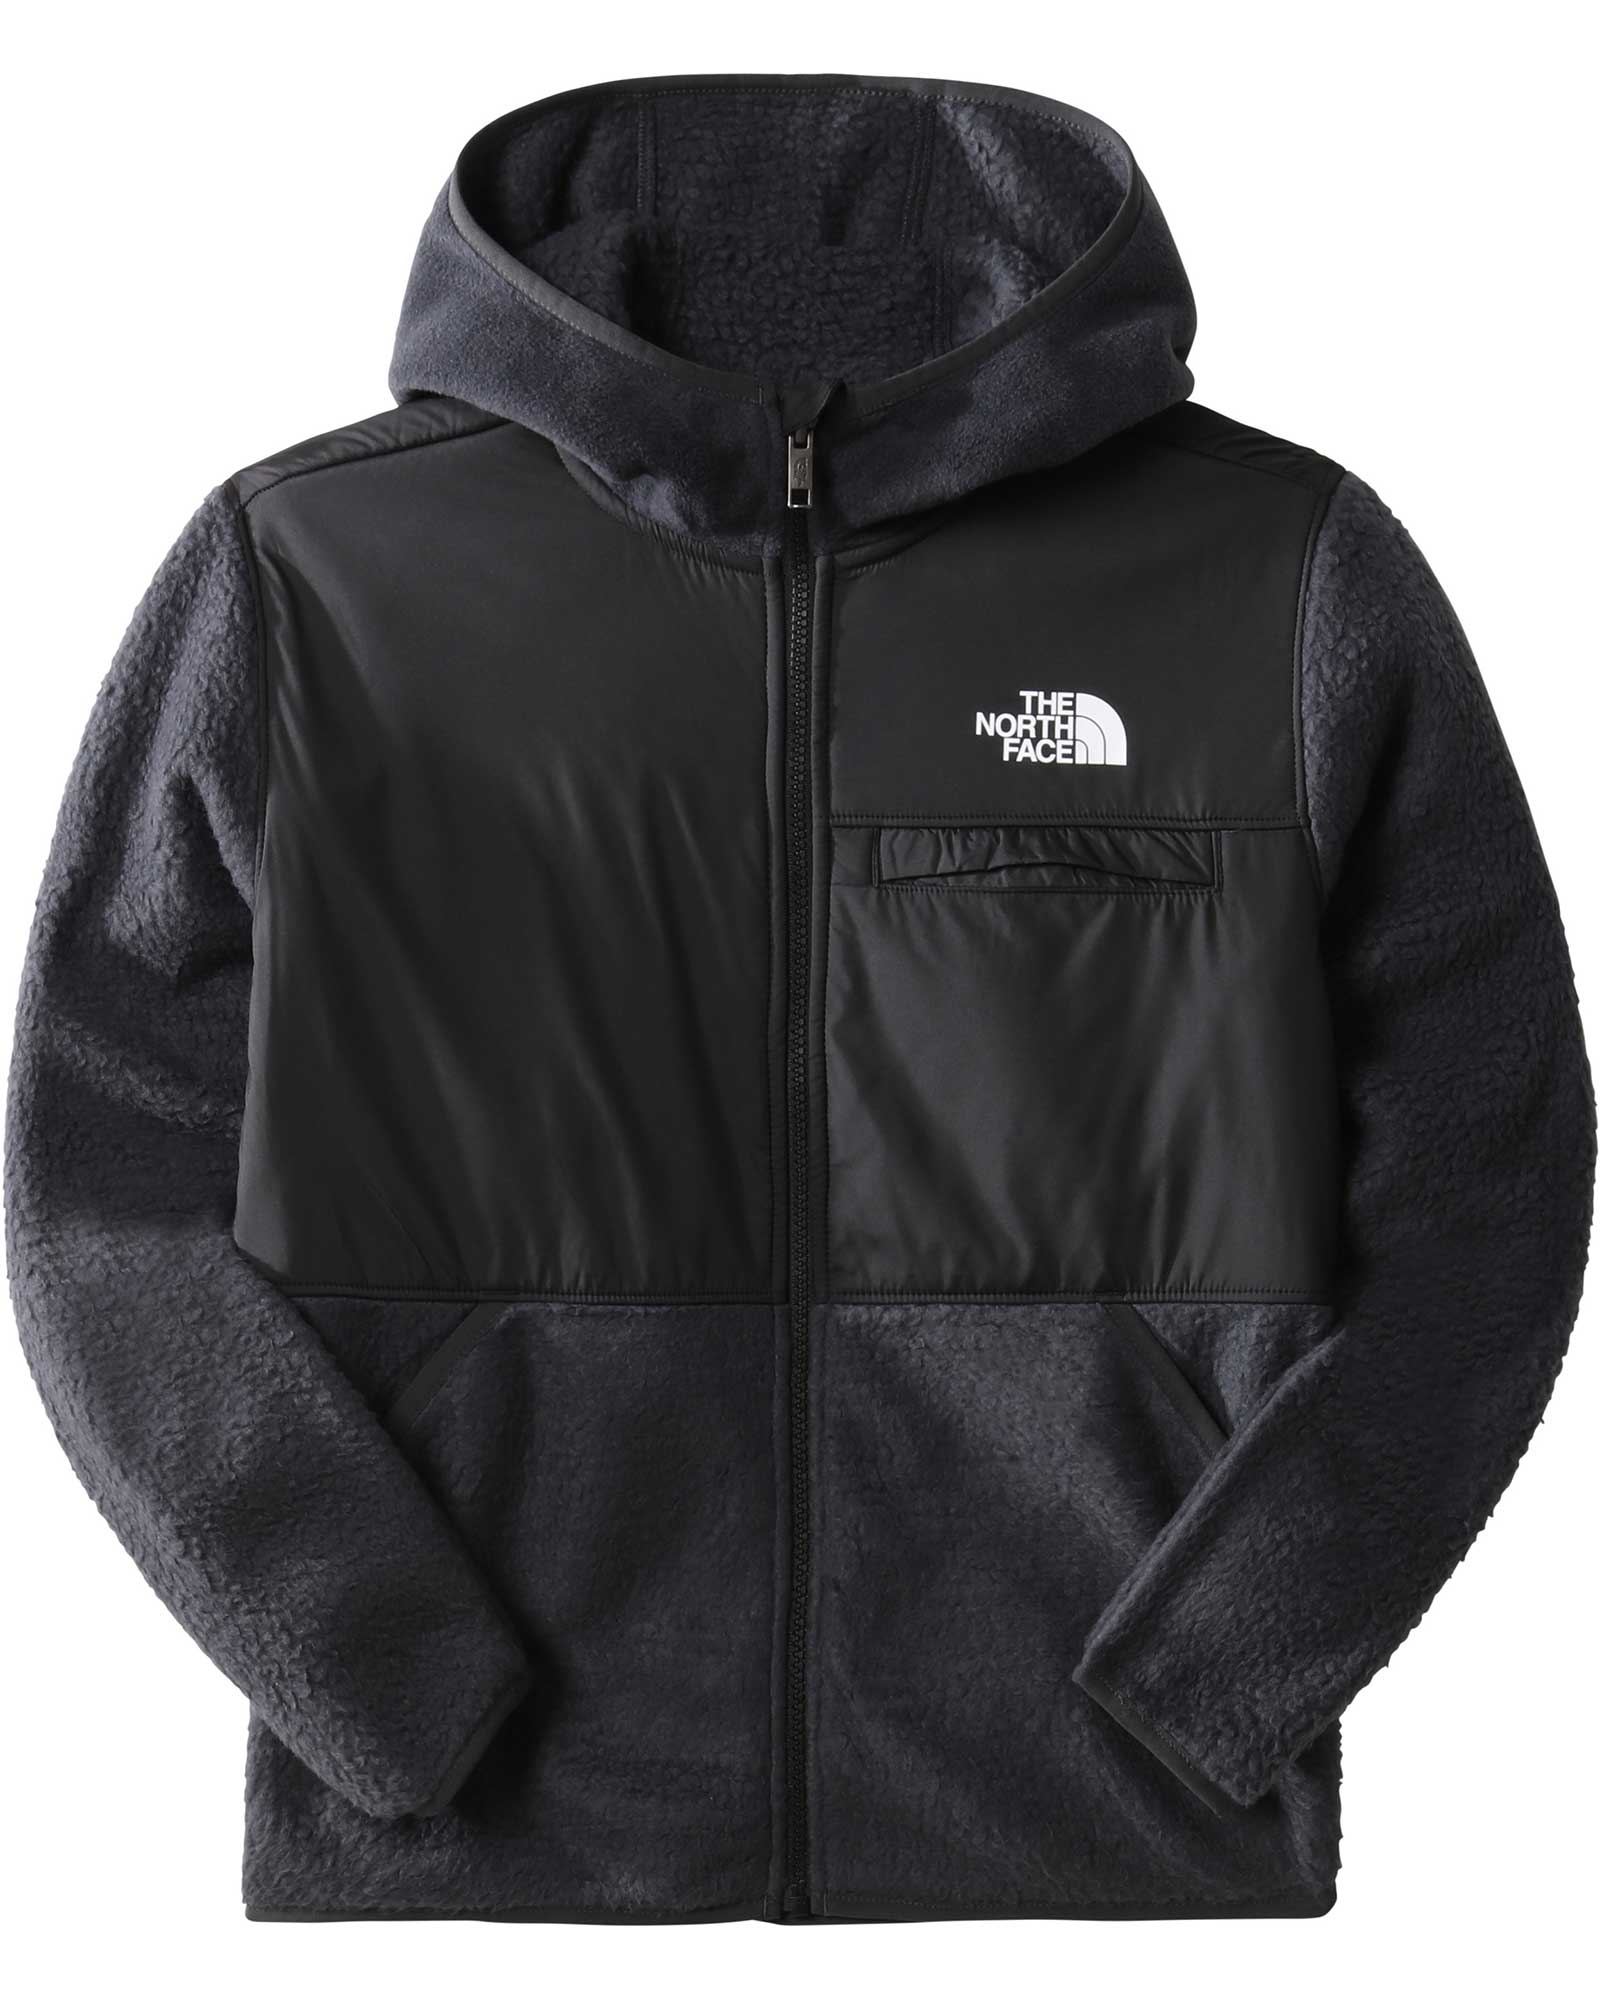 The North Face Forrest Kids’ Fleece Full Zip Hooded Jacket - Asphalt Grey L